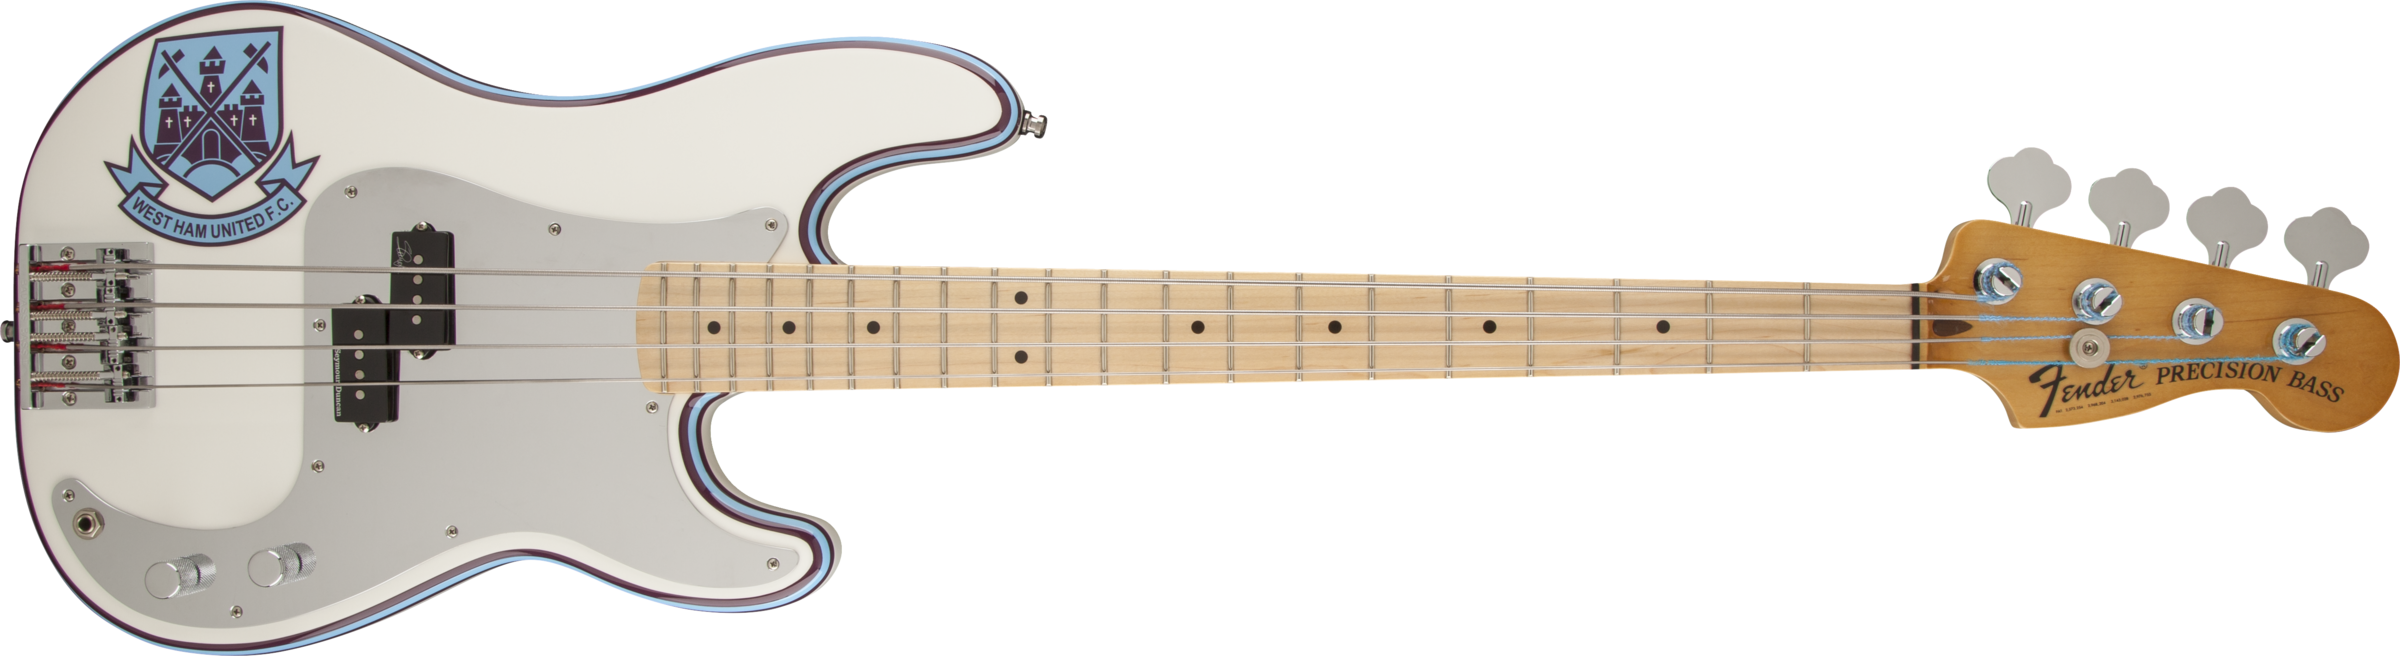 Bonne Lutherie , mauvaise réplique et tarif élevé pour une speudo signature  - Avis Fender Steve Harris Precision Bass 2015 - Audiofanzine